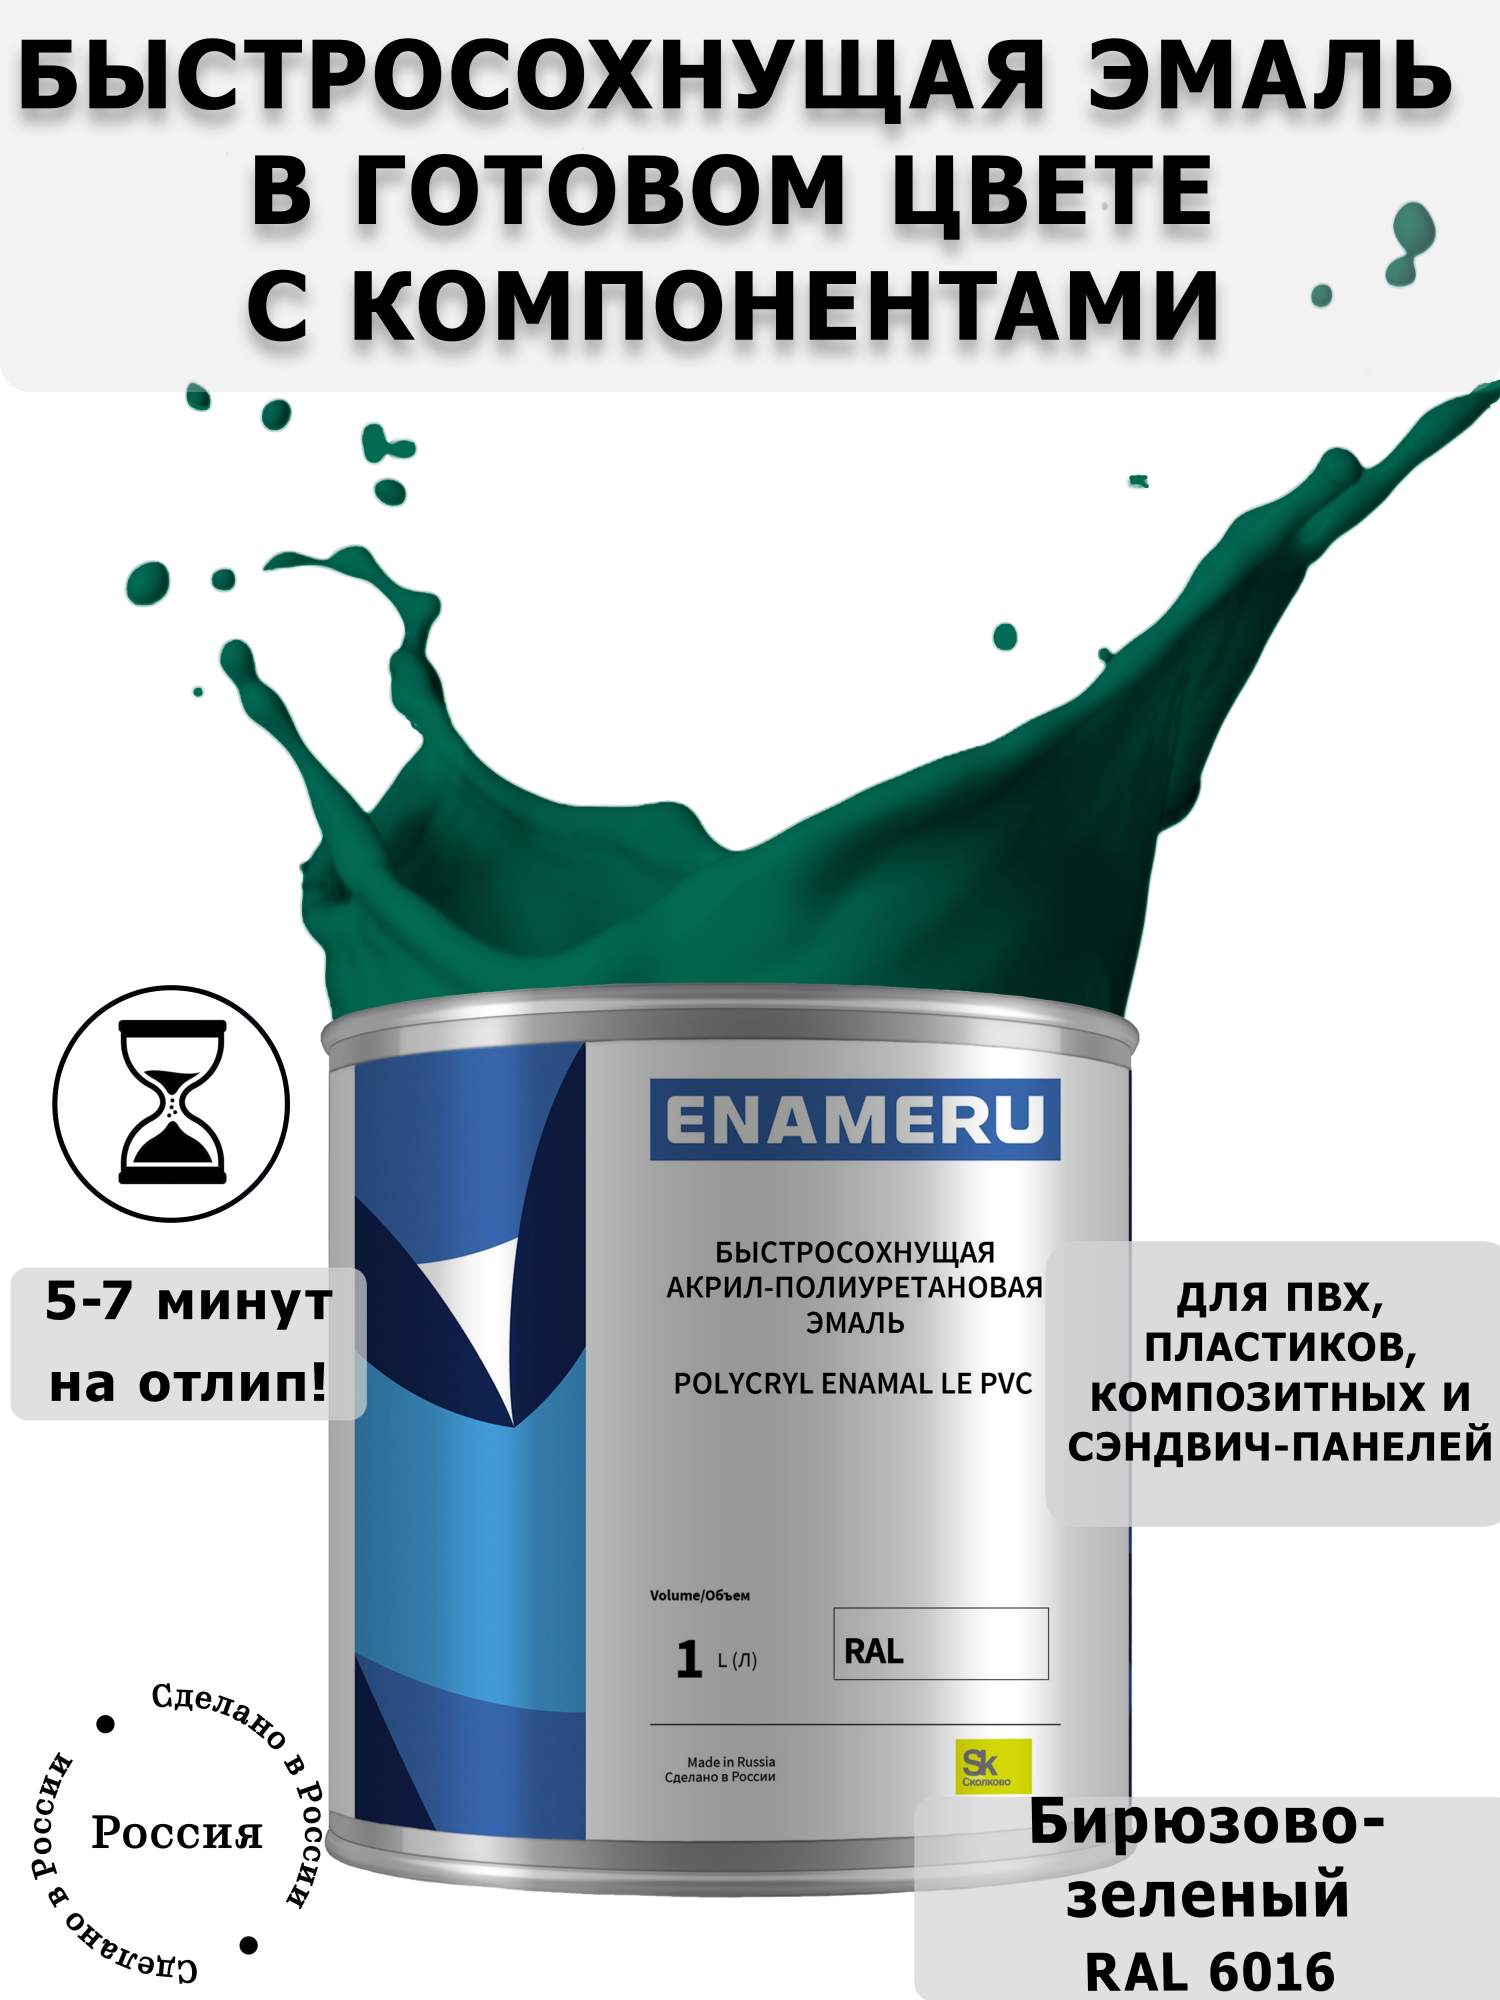 Эмаль Enameru для ПВХ, пластика с компонентами, акрил-полиуретановая, 1л, RAL 6016